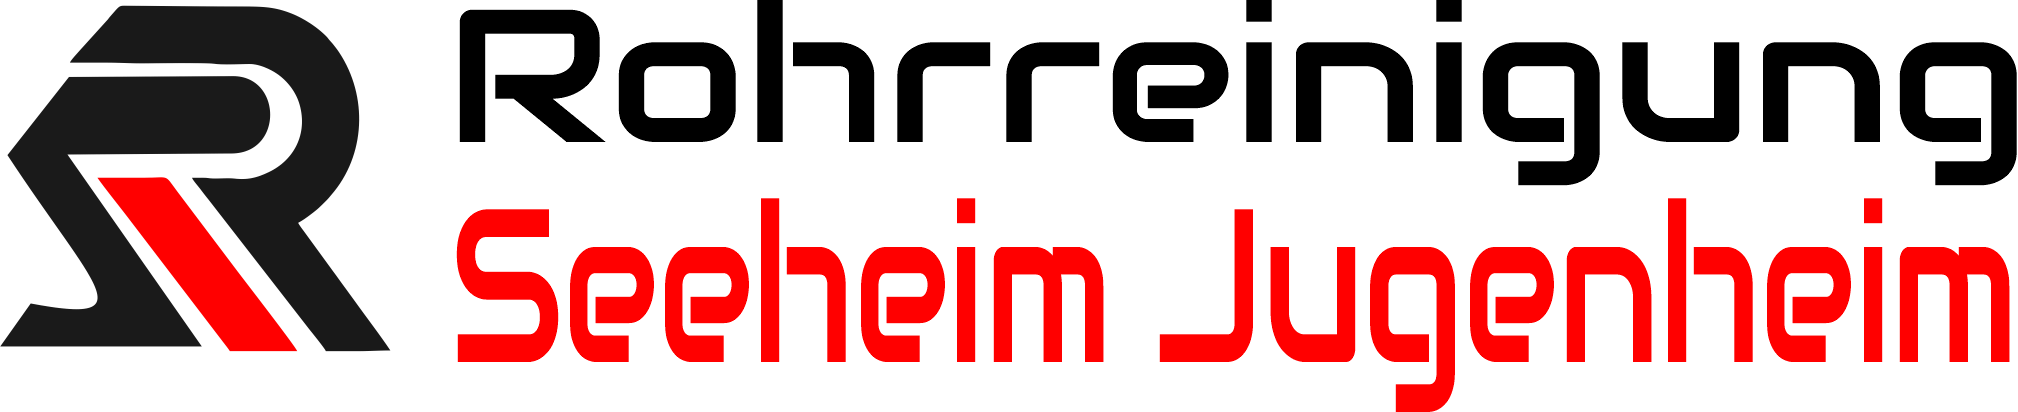 Rohrreinigung Seeheim Jugenheim Logo